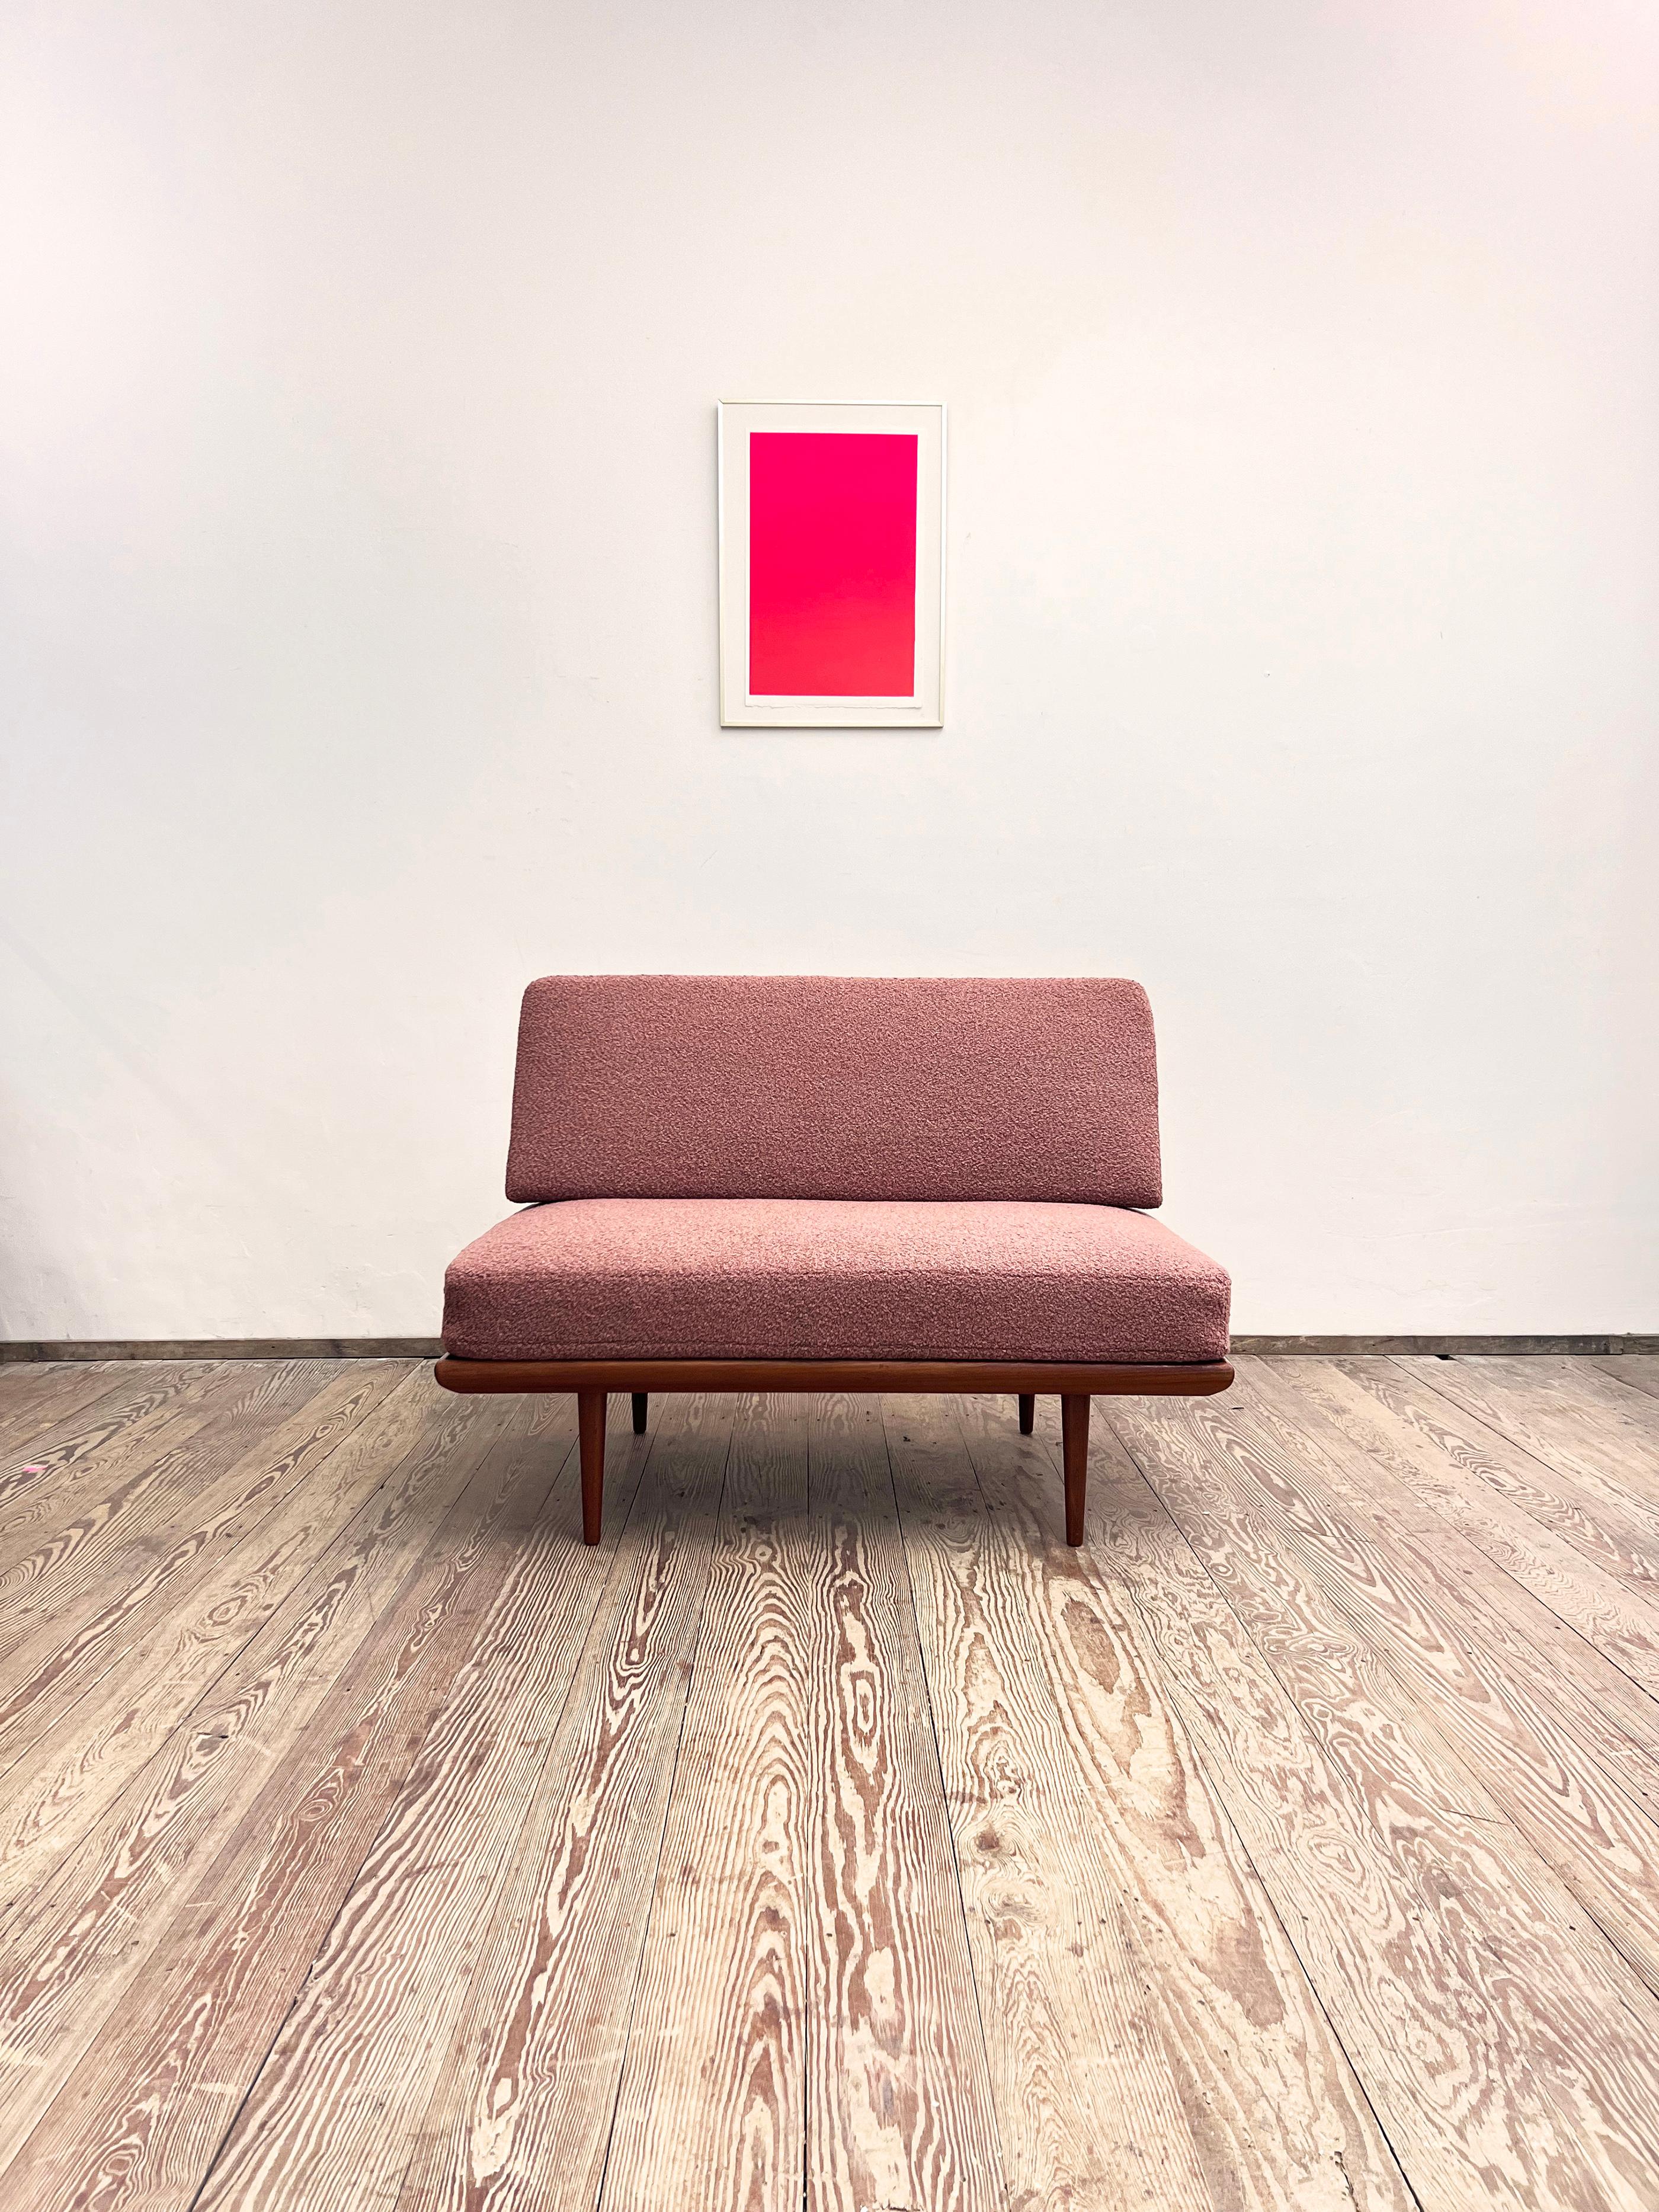 Abmessungen 125 x 80 x 85 x 43 cm  (BxTxHxSH)

Dieses formschöne und bequeme Sofa wurde von den dänischen Designern Peter Hvidt und Orla Mølgaard Nielsen für France und Daverkosen entworfen. Die Mid-Century-Couch ist die kleine Version der